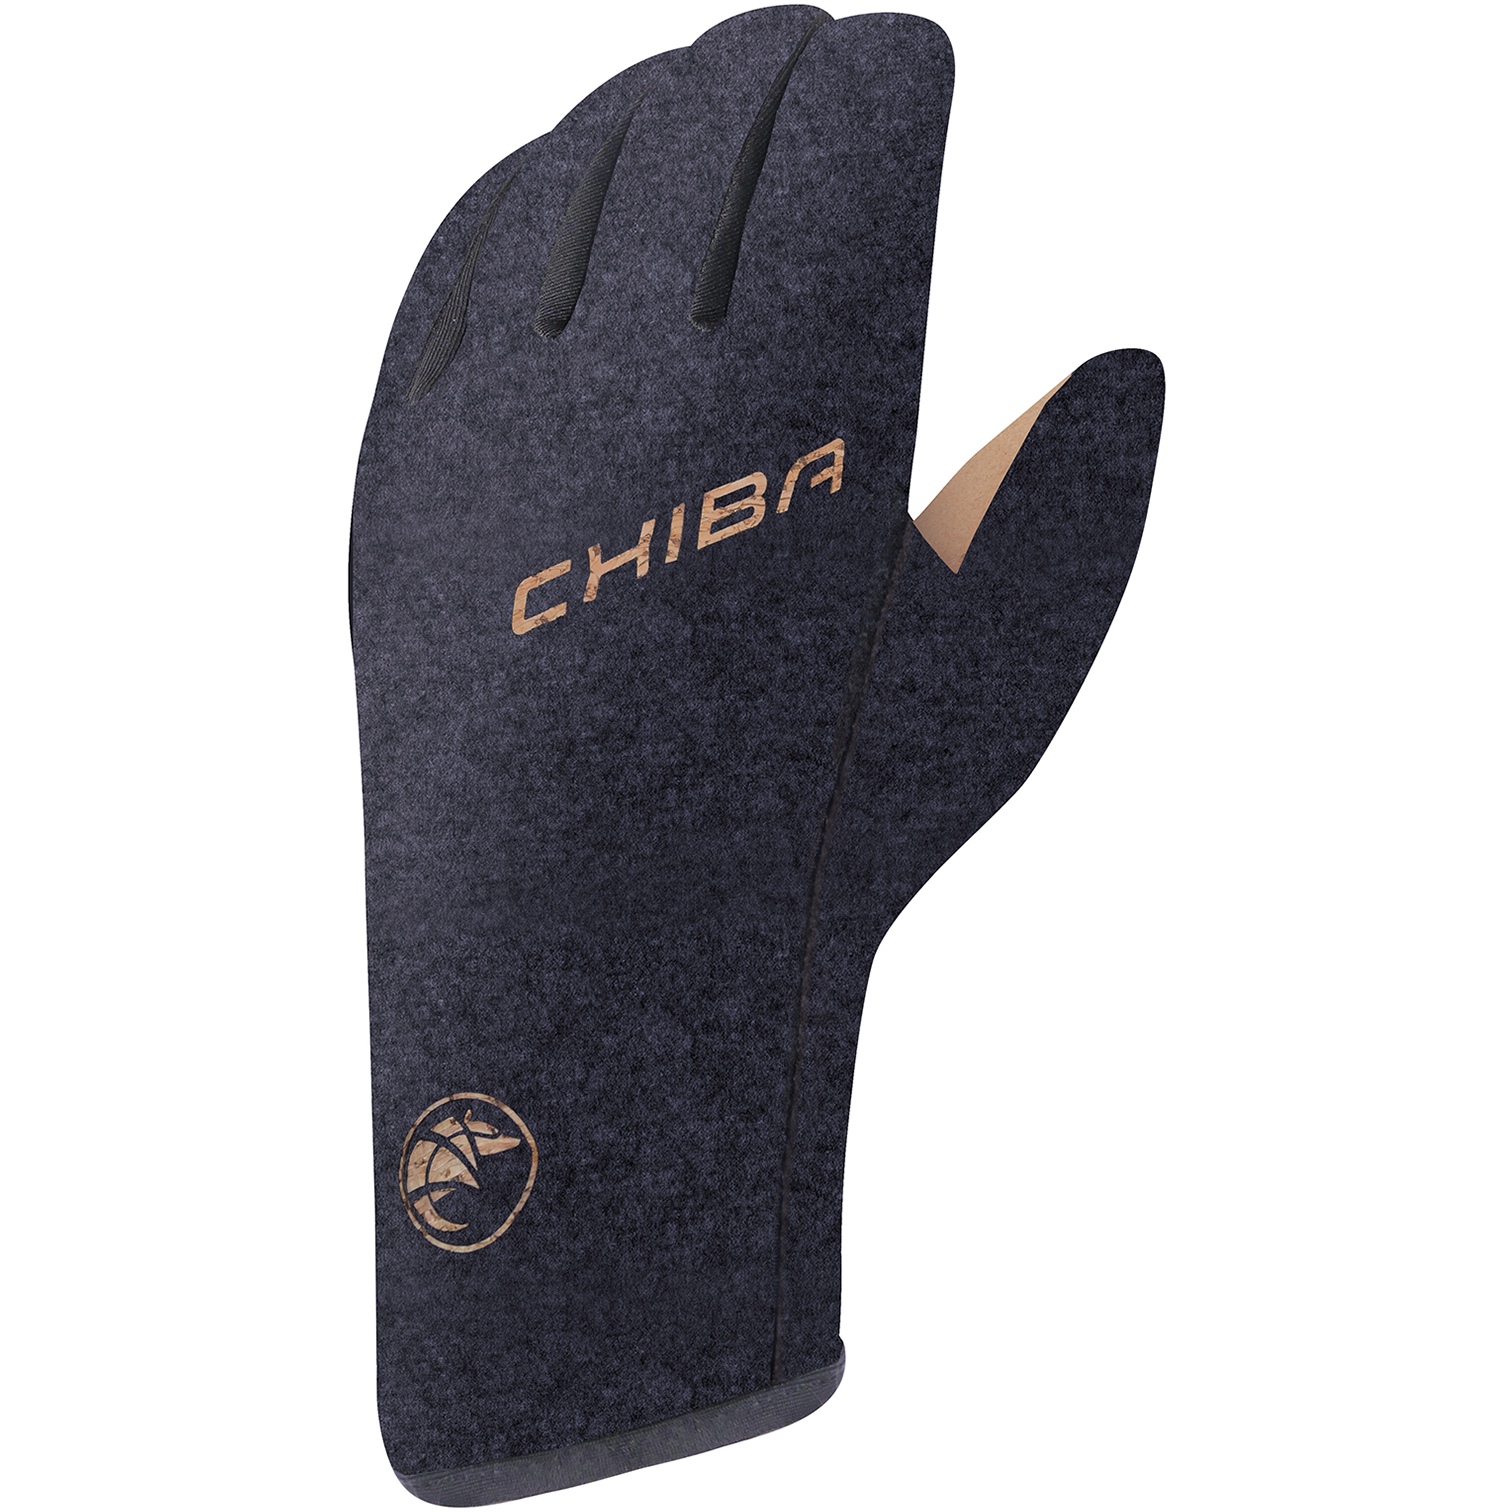 Productfoto van Chiba All Natural Light Fietshandschoenen - zwart